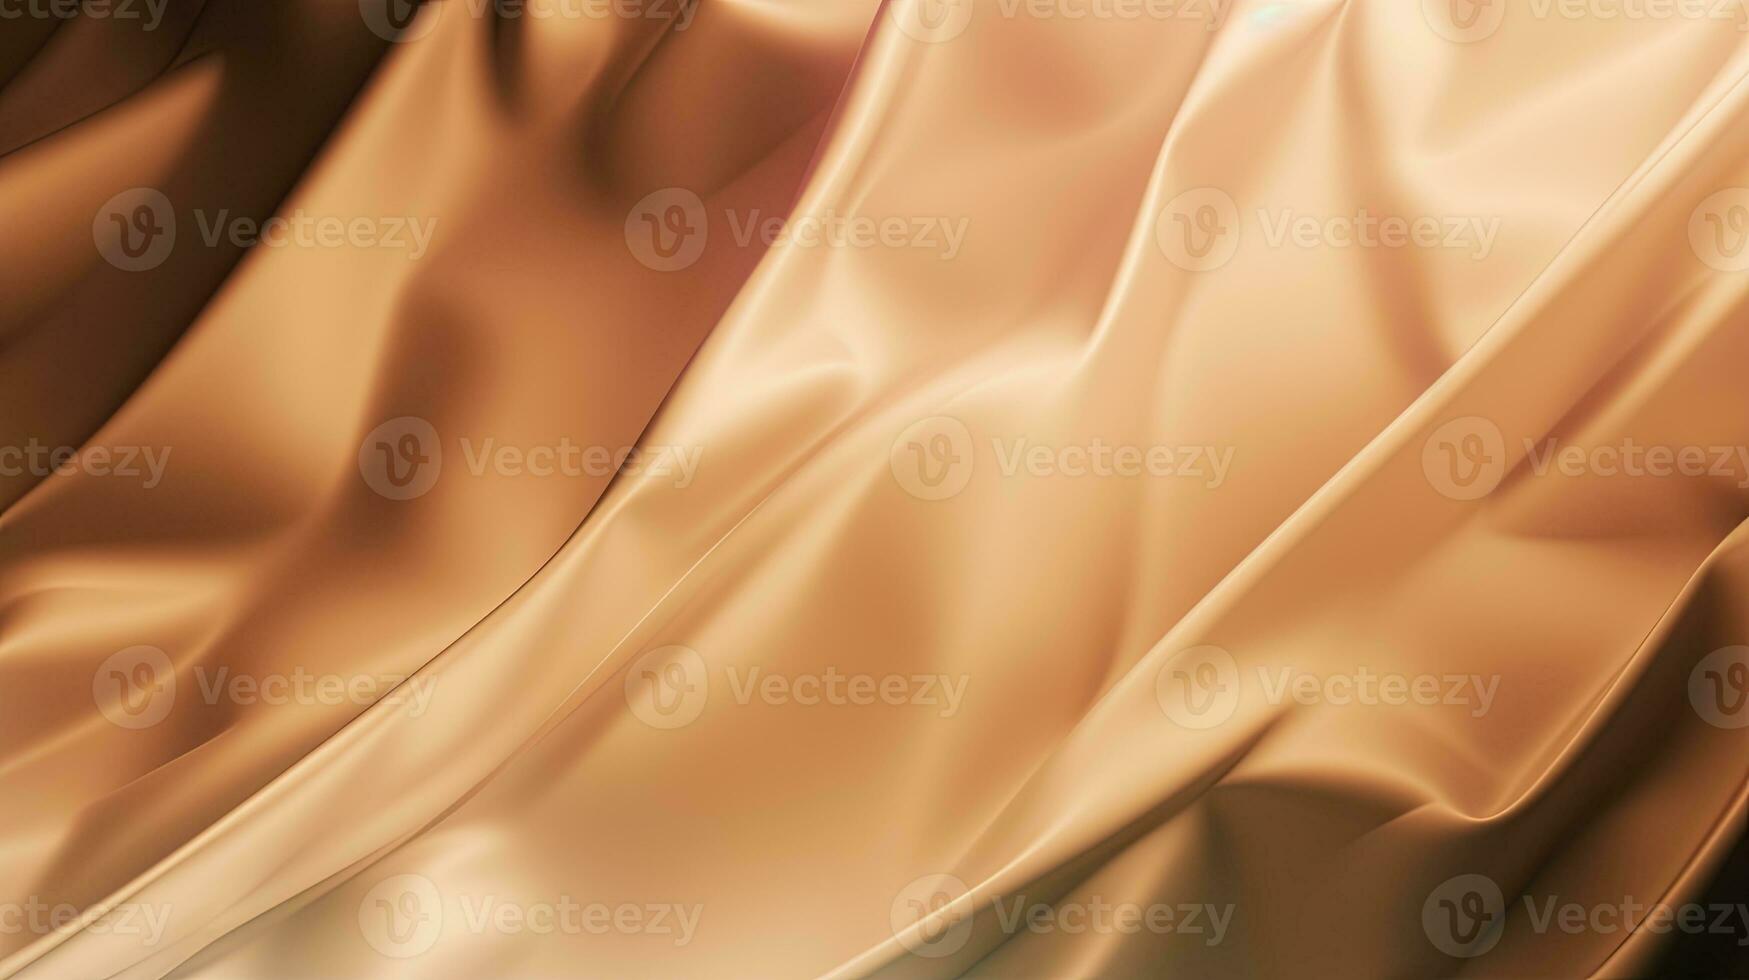 goud satijn kleding stof structuur achtergrond. detailopname van golfde gouden zijde kleding stof. 3d geven illustratie foto